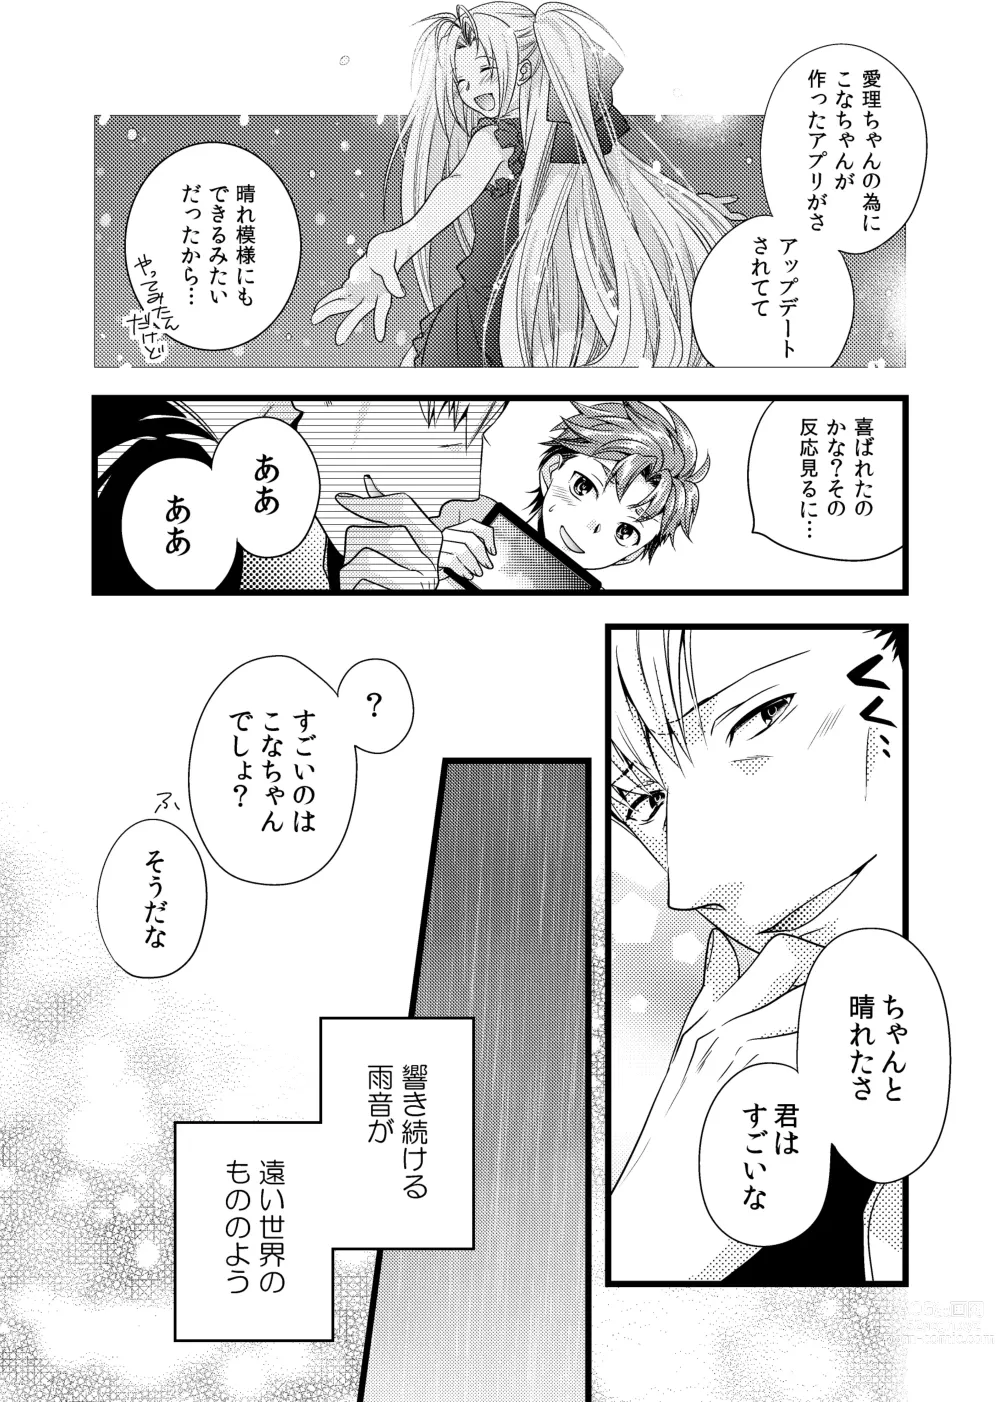 Page 15 of doujinshi sonna konnano futarigoto